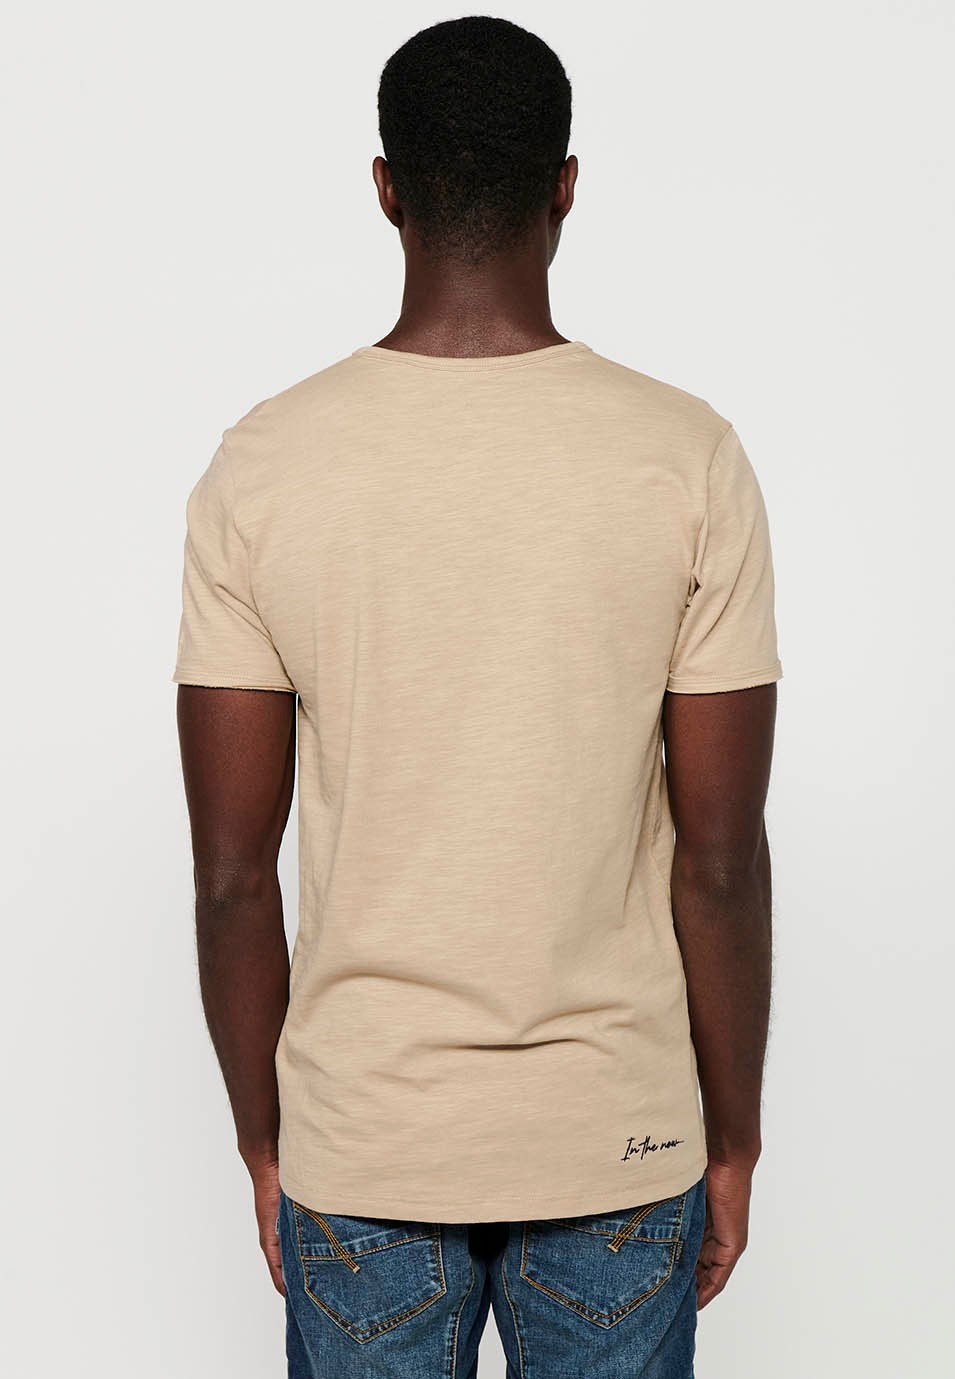 Basic short-sleeved T-shirt, V-neck with button, beige color for men